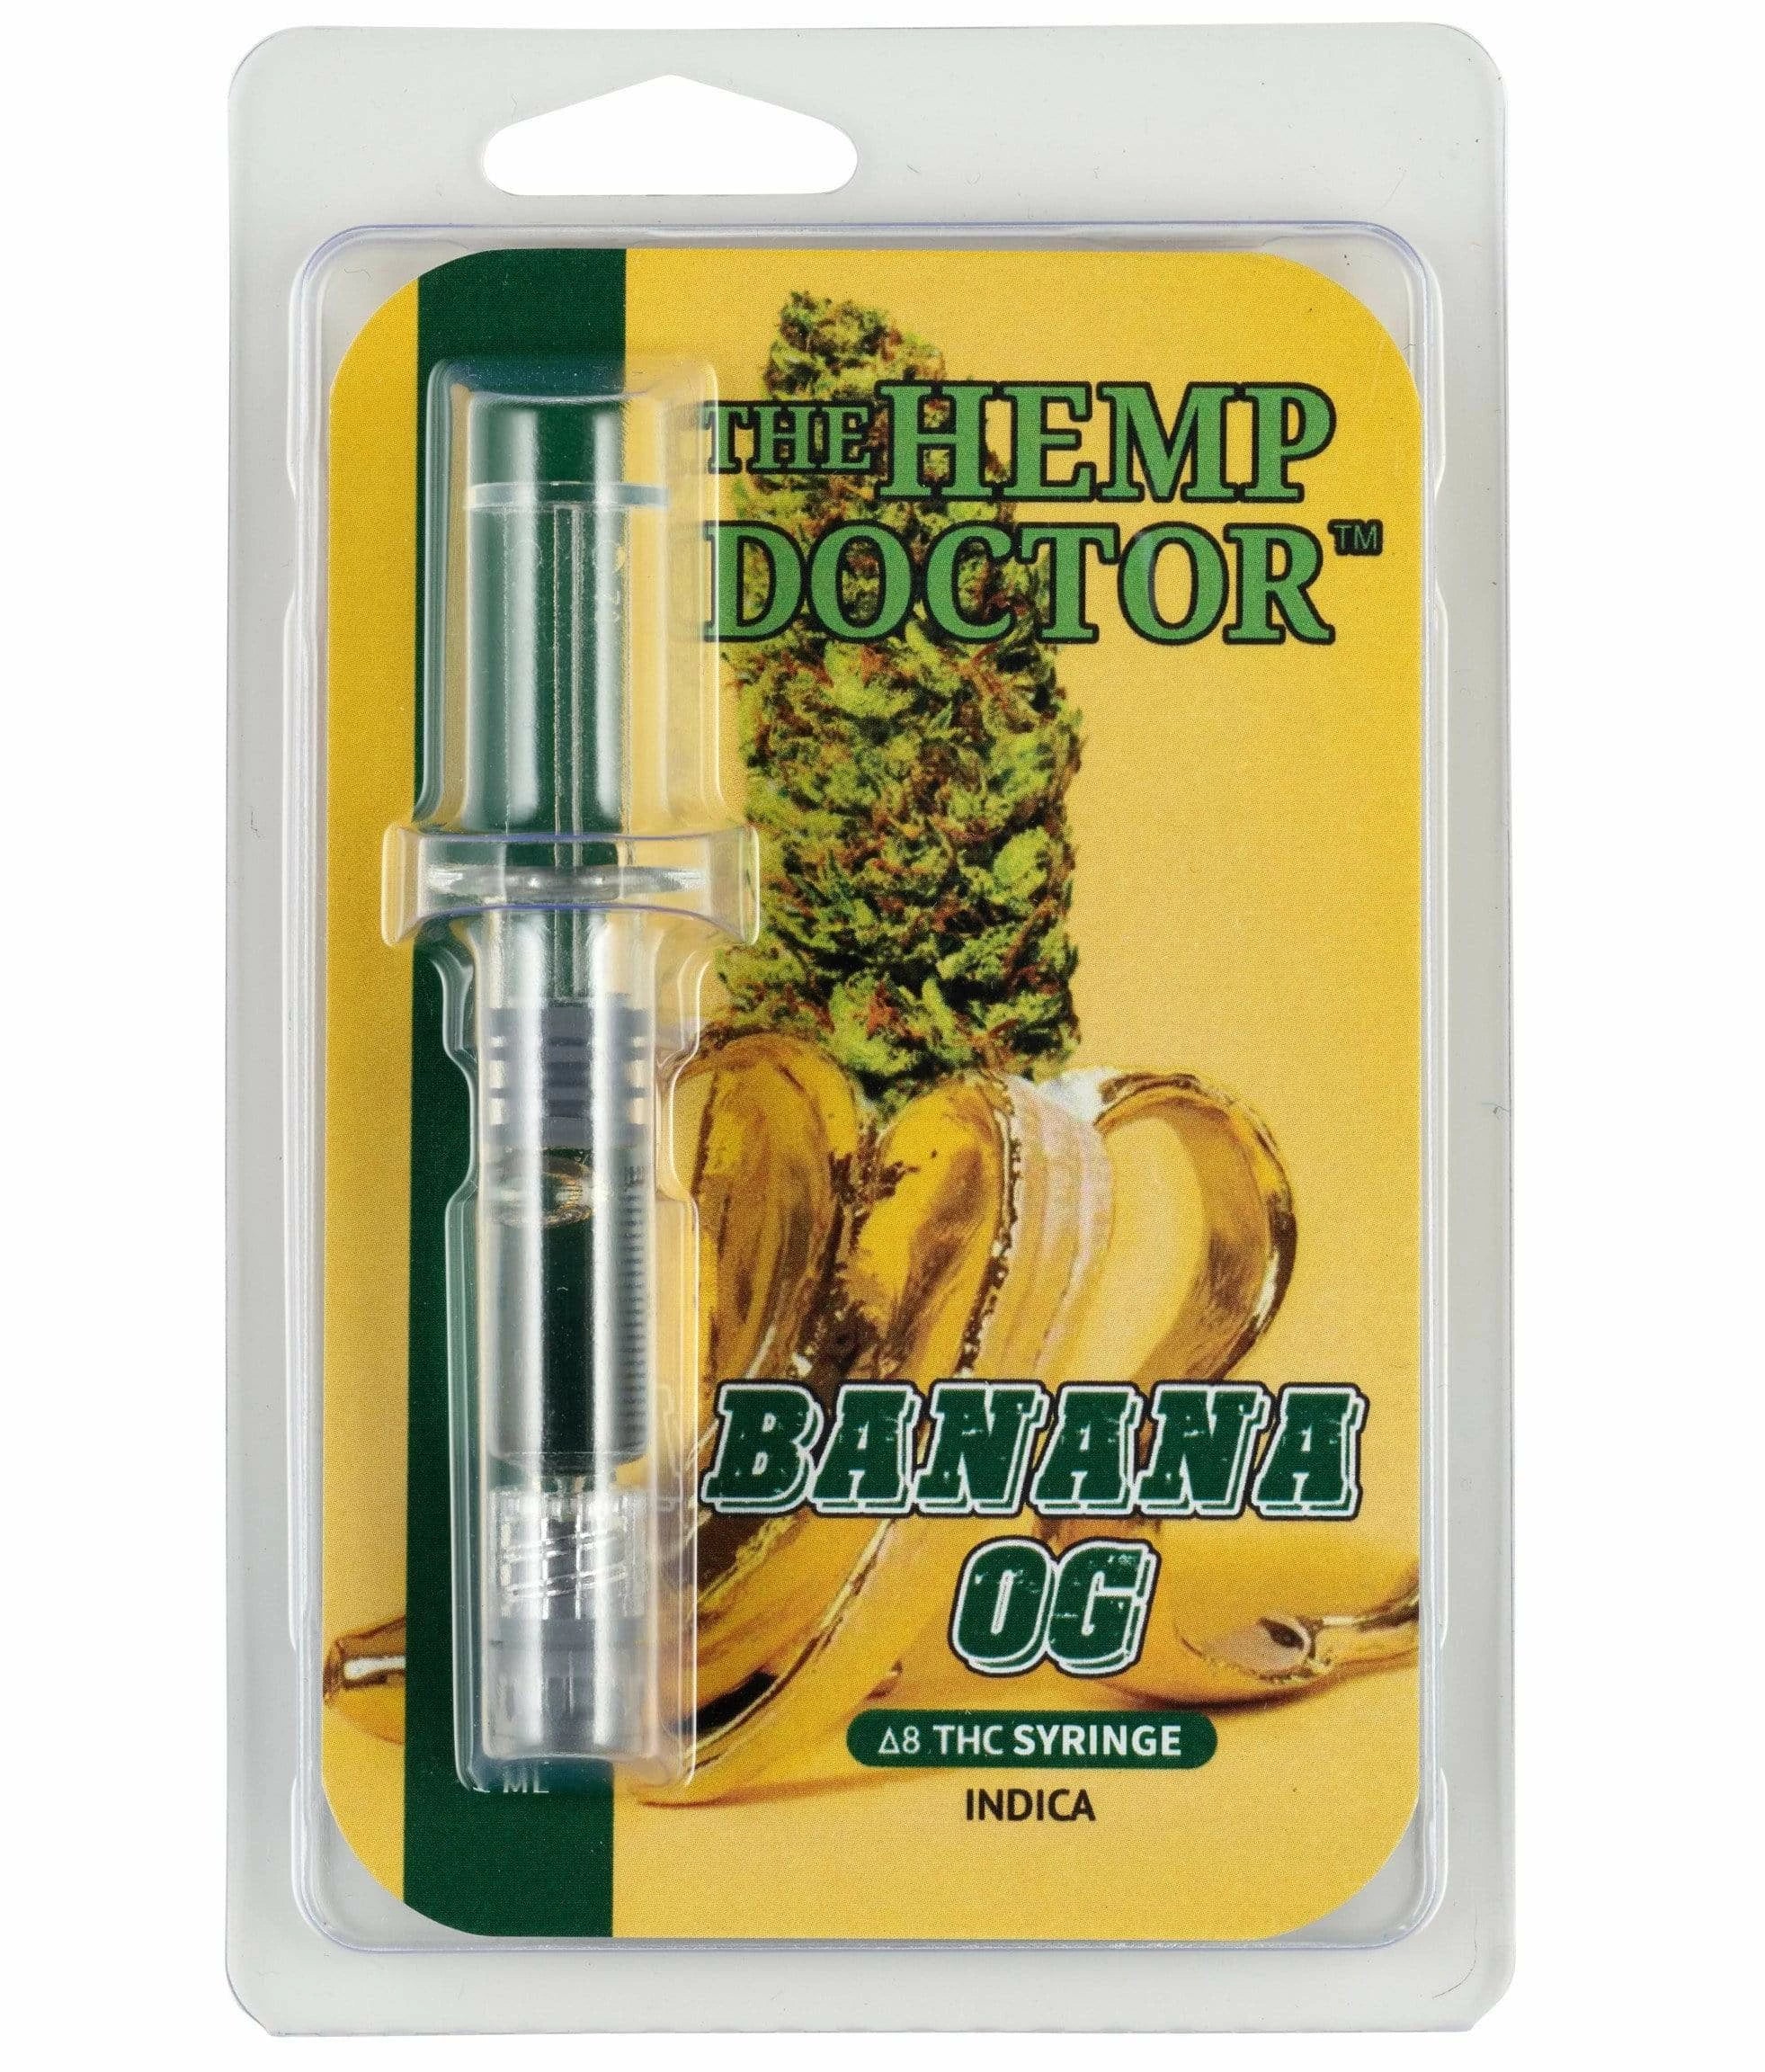 The Hemp Doctor Banana OG 1g Delta 8 Cartridge Best Price